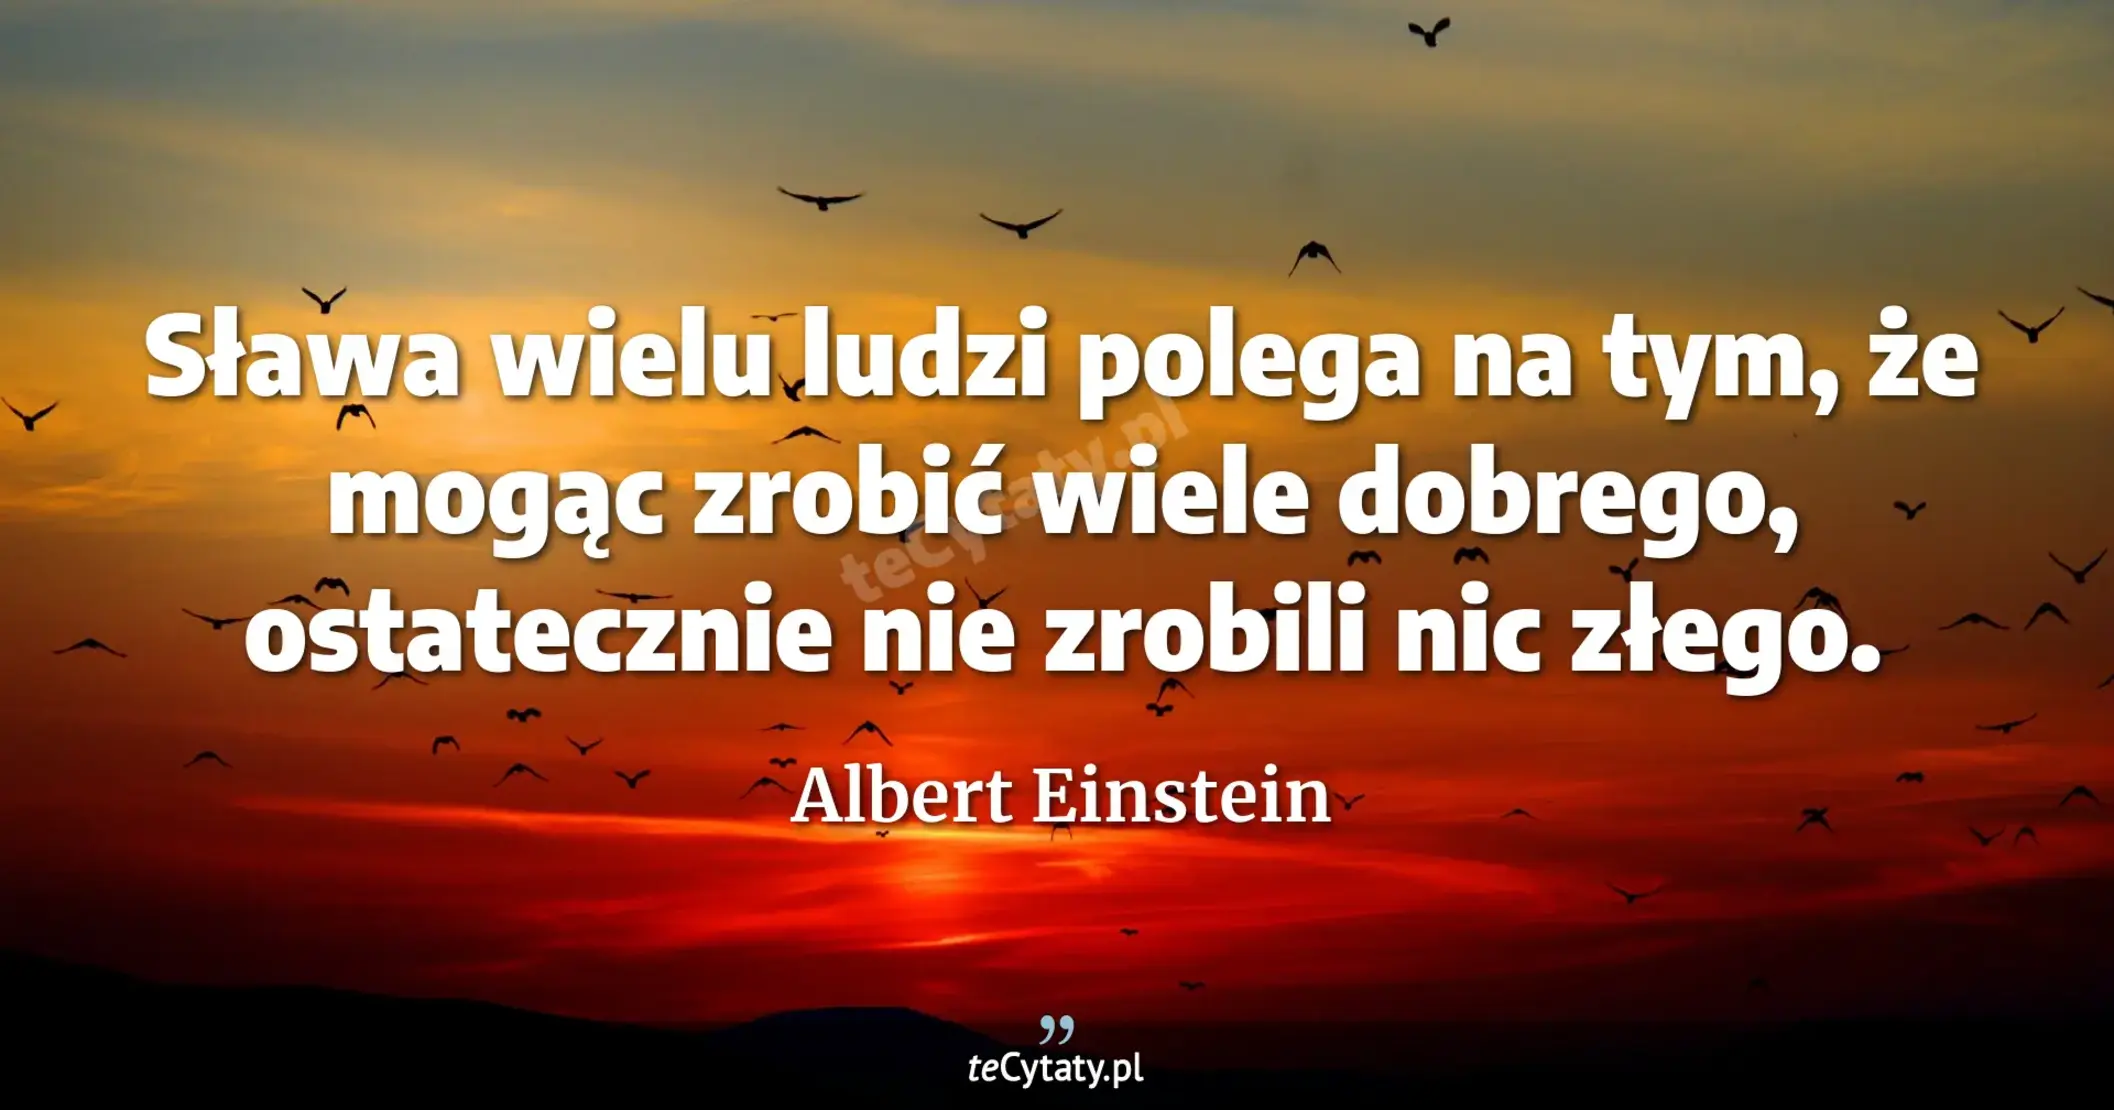 Sława wielu ludzi polega na tym, że mogąc zrobić wiele dobrego, ostatecznie nie zrobili nic złego. - Albert Einstein